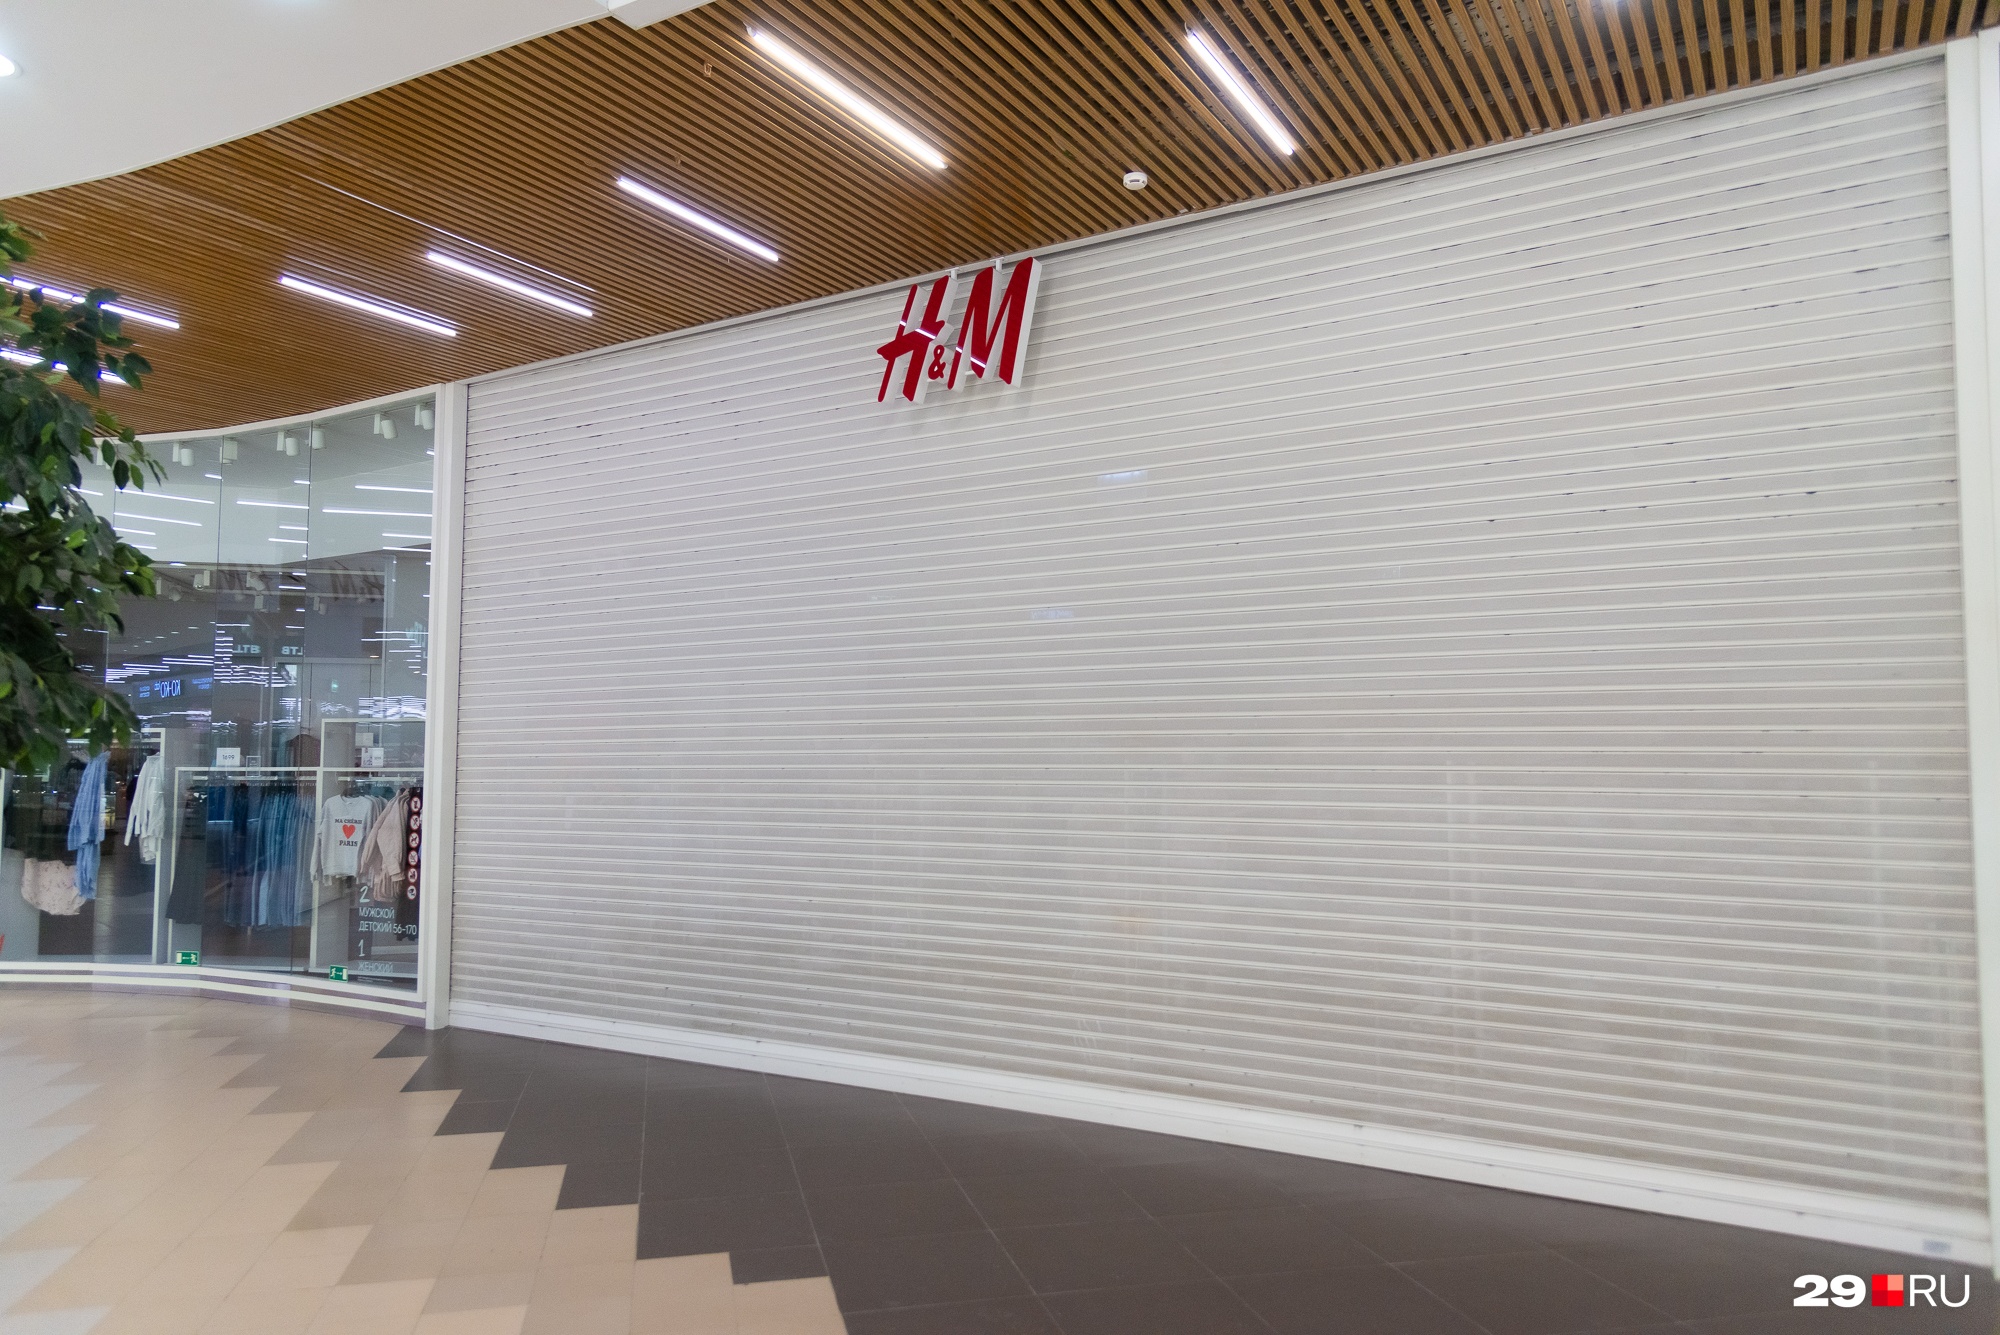 Одним из первых перестал работать H&M. Мы уже спрашивали архангелогородцев, <a href="https://29.ru/text/business/2022/03/03/70484699/" class="_" target="_blank">как они отнеслись к его закрытию</a>